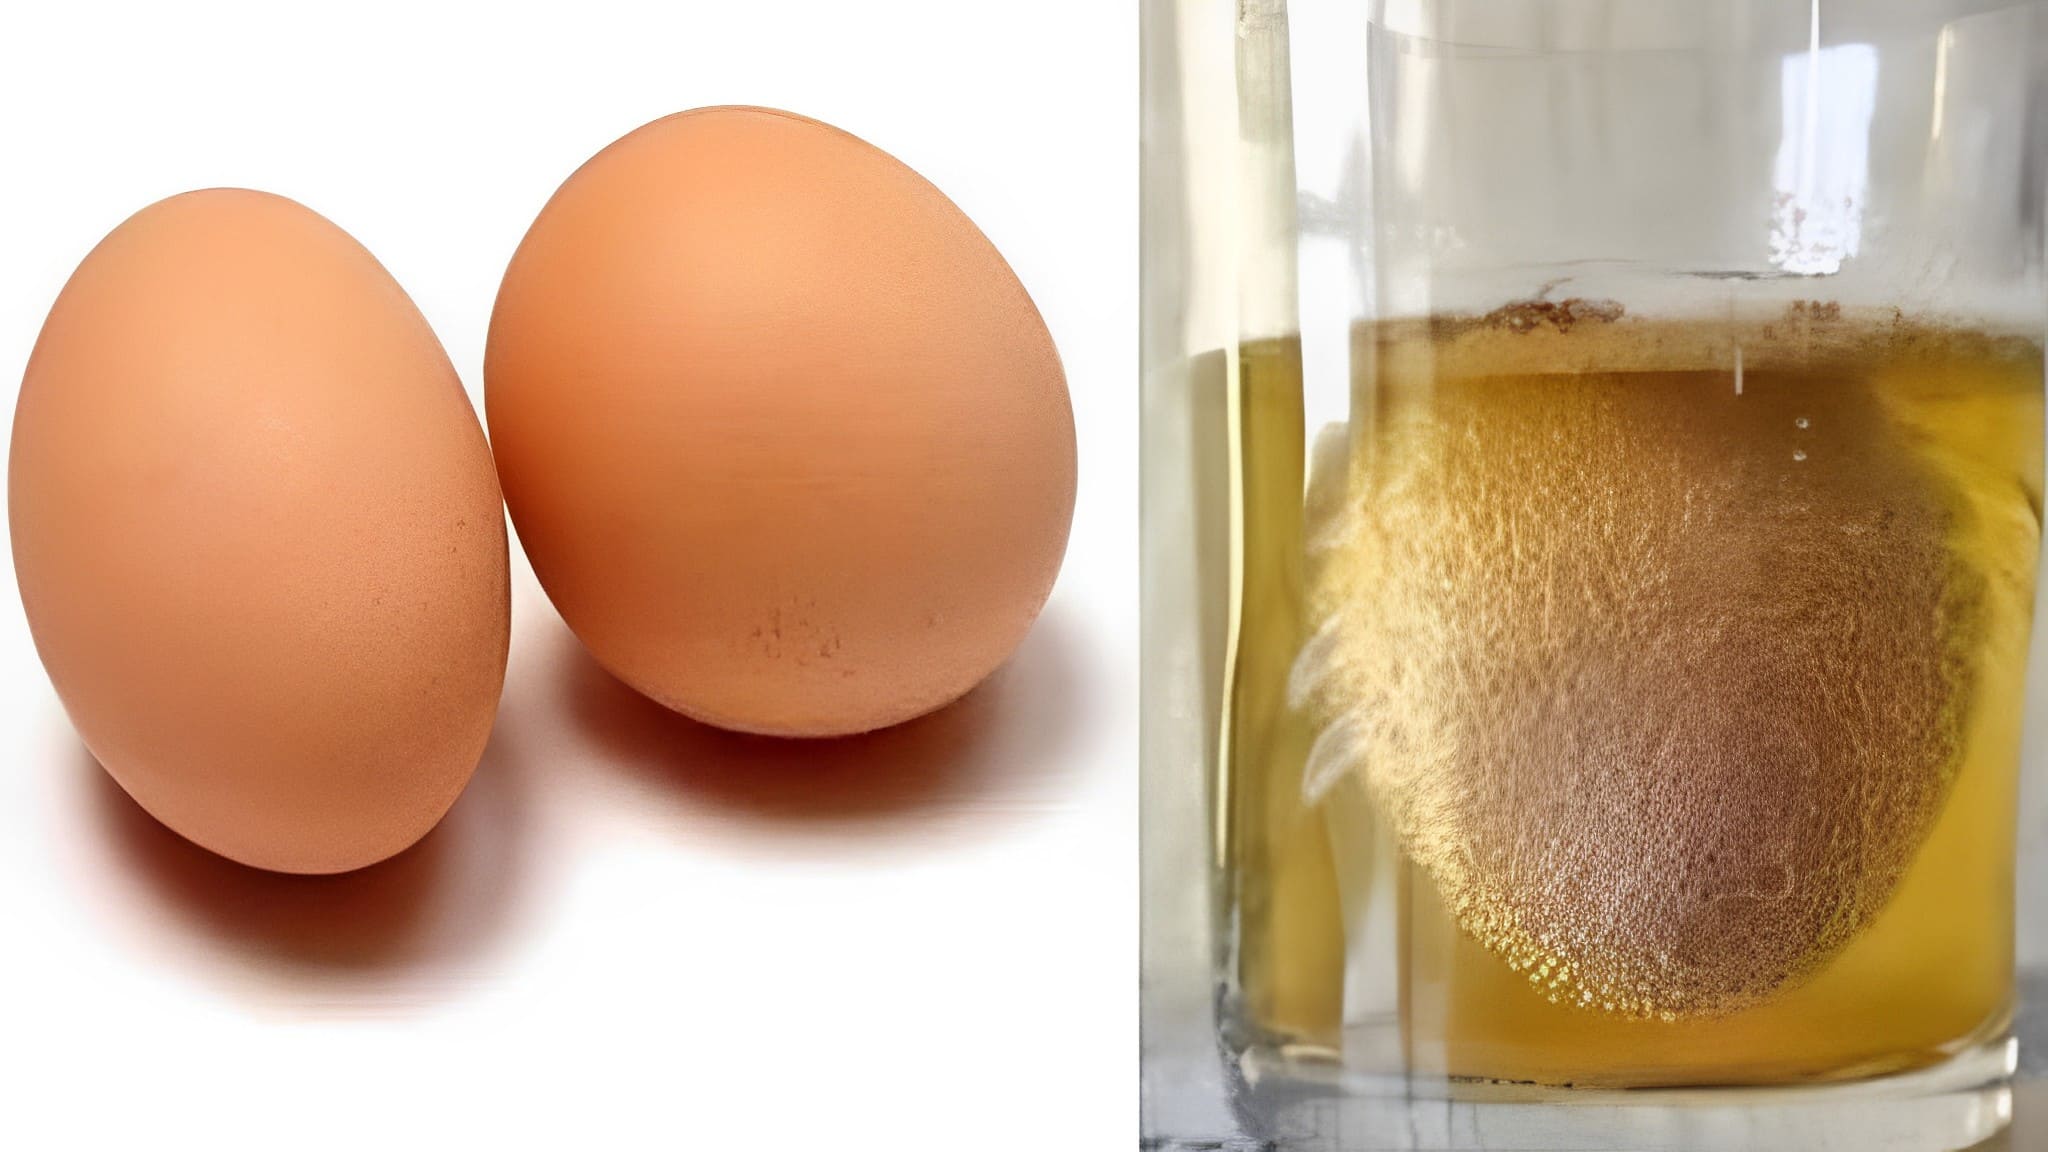 Membrana de huevo: ¿El secreto a voces para mantener articulaciones y huesos saludables?